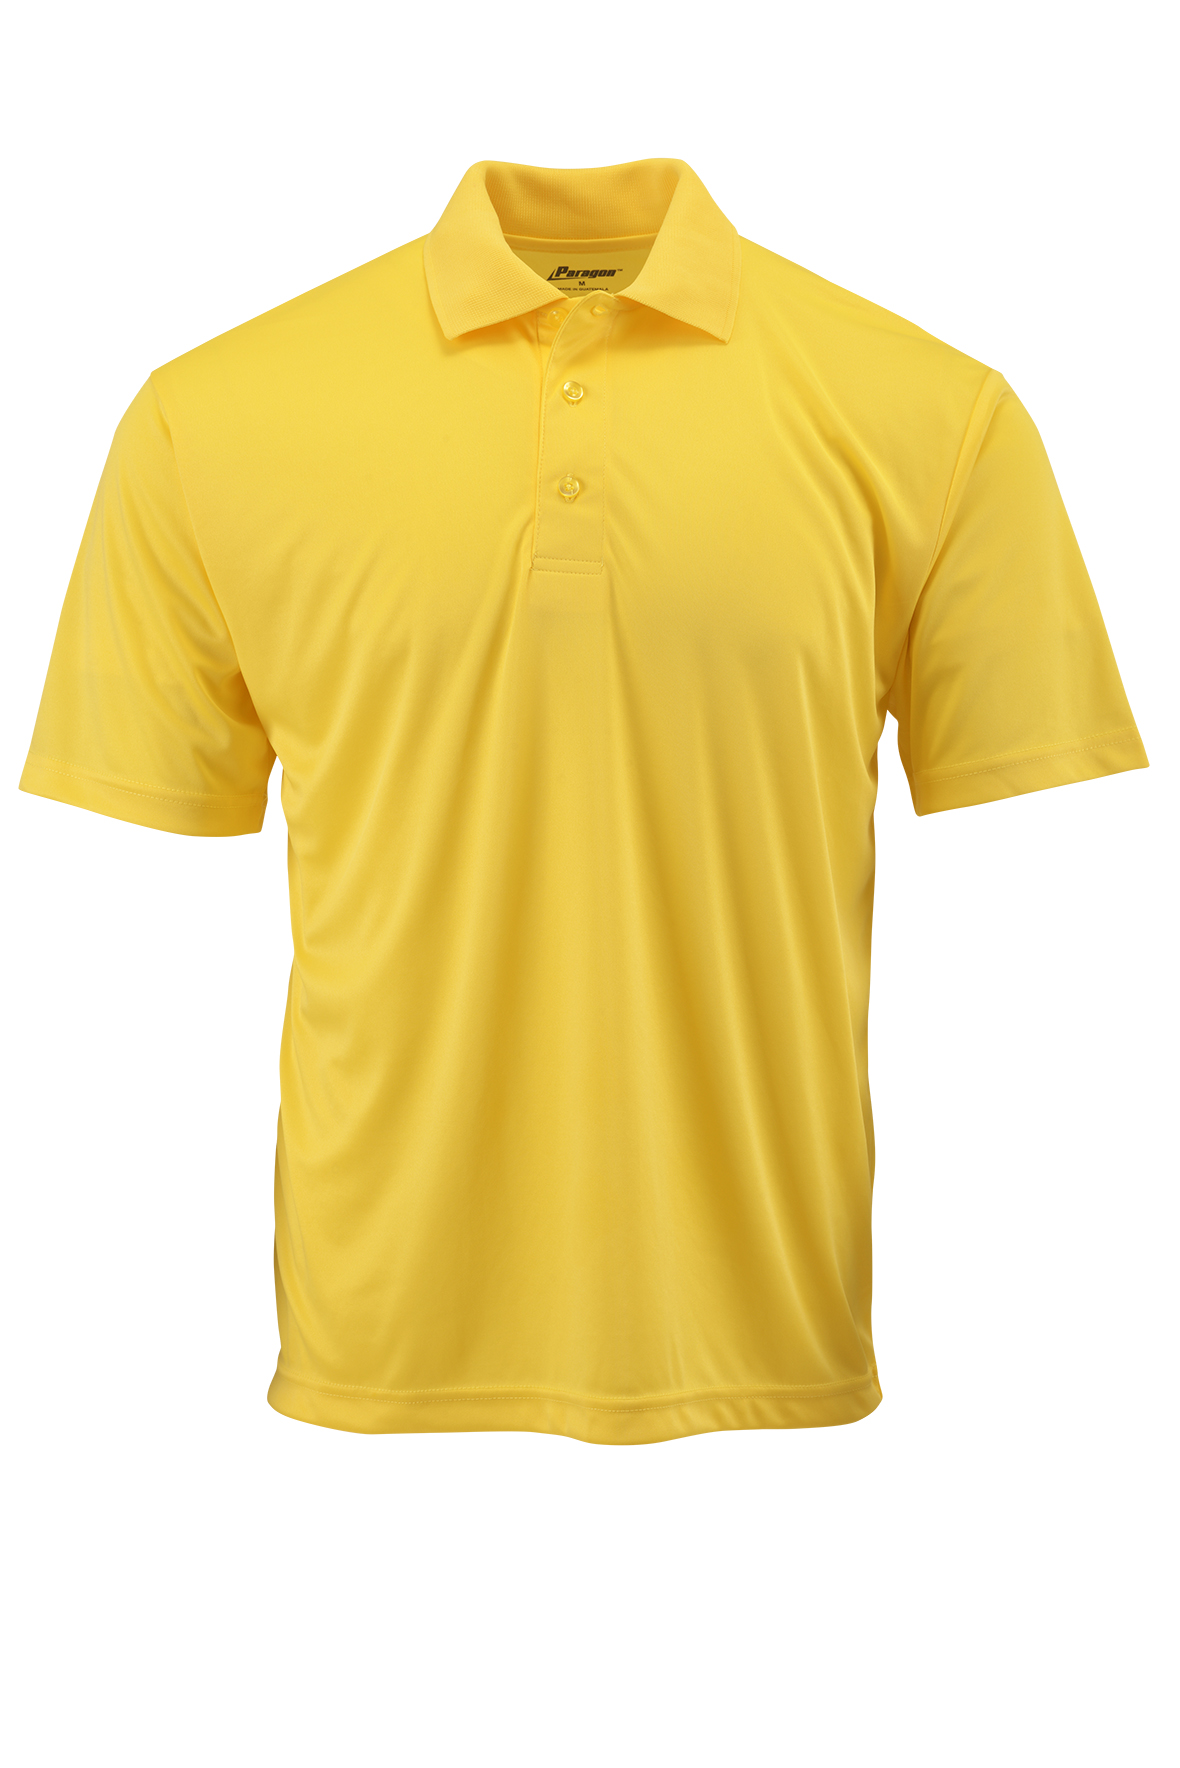 yellow-tshirt